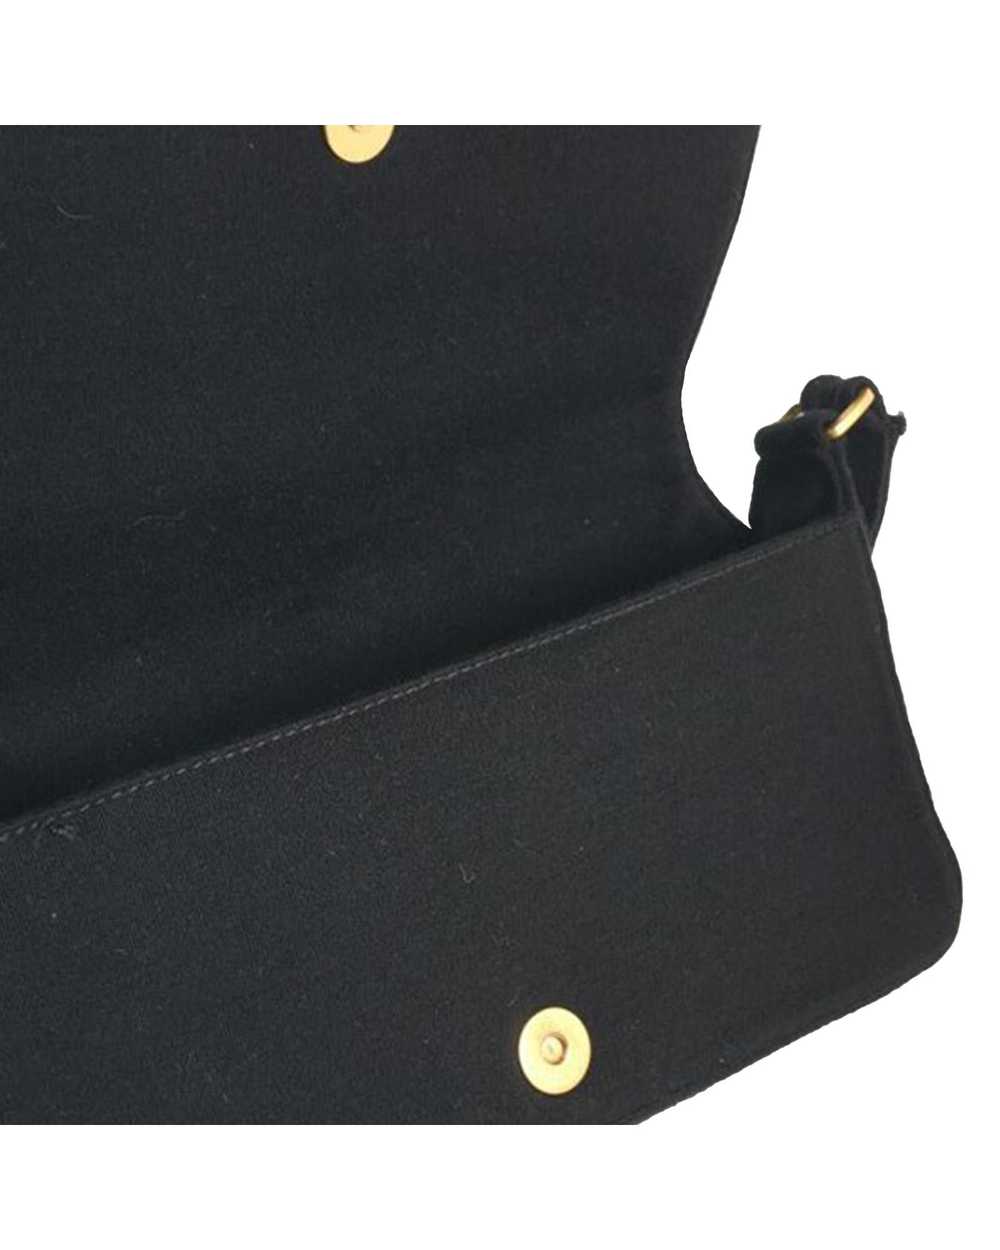 Chanel Chocolate Bar Flap Shoulder Bag - image 7